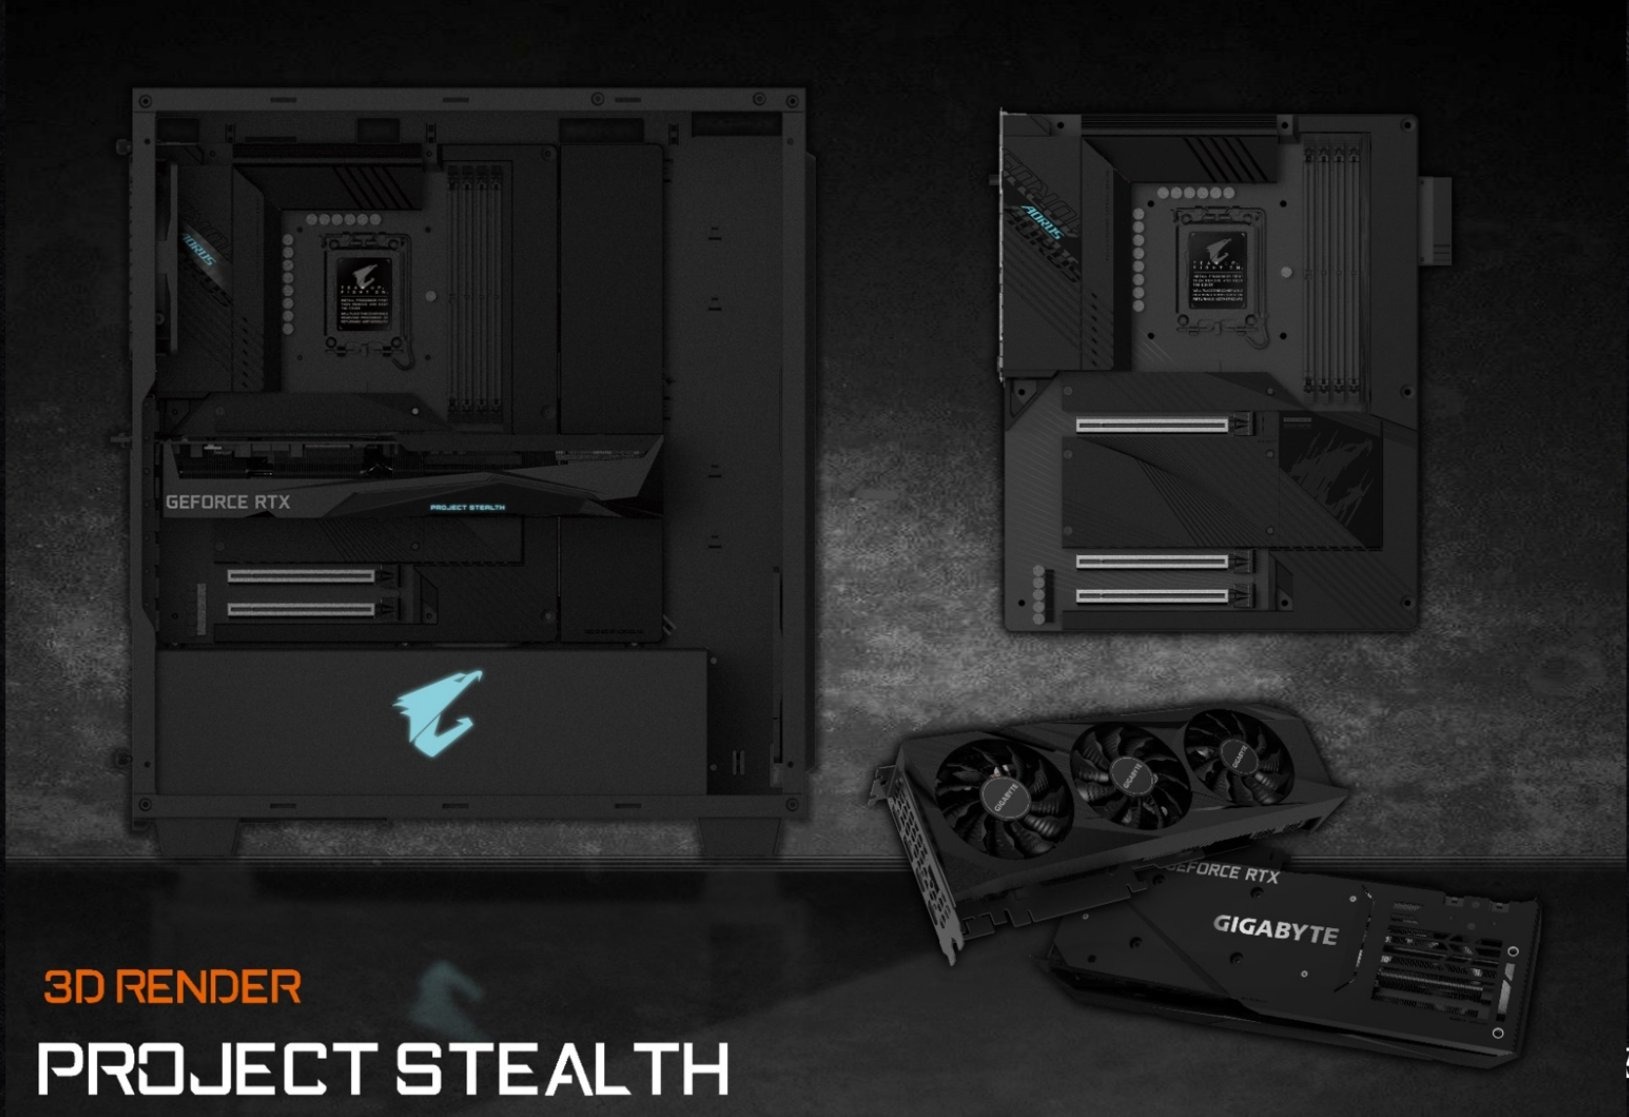 ASUS : Project Stealth, une gamme PC de produits pour rendre vos câbles 